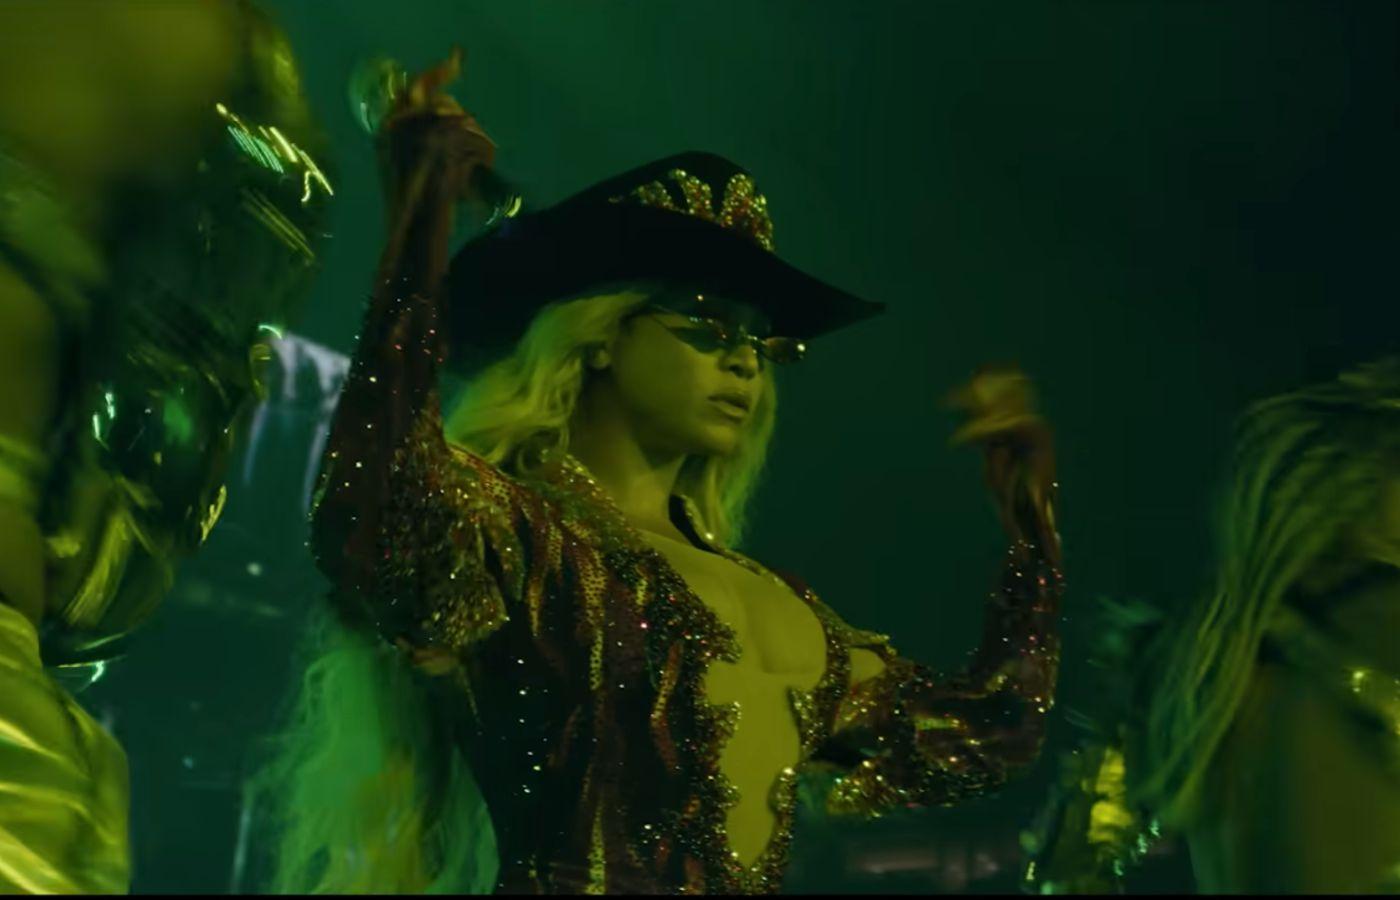 7 fiercest moments in Beyoncé's 'Renaissance' film, new single